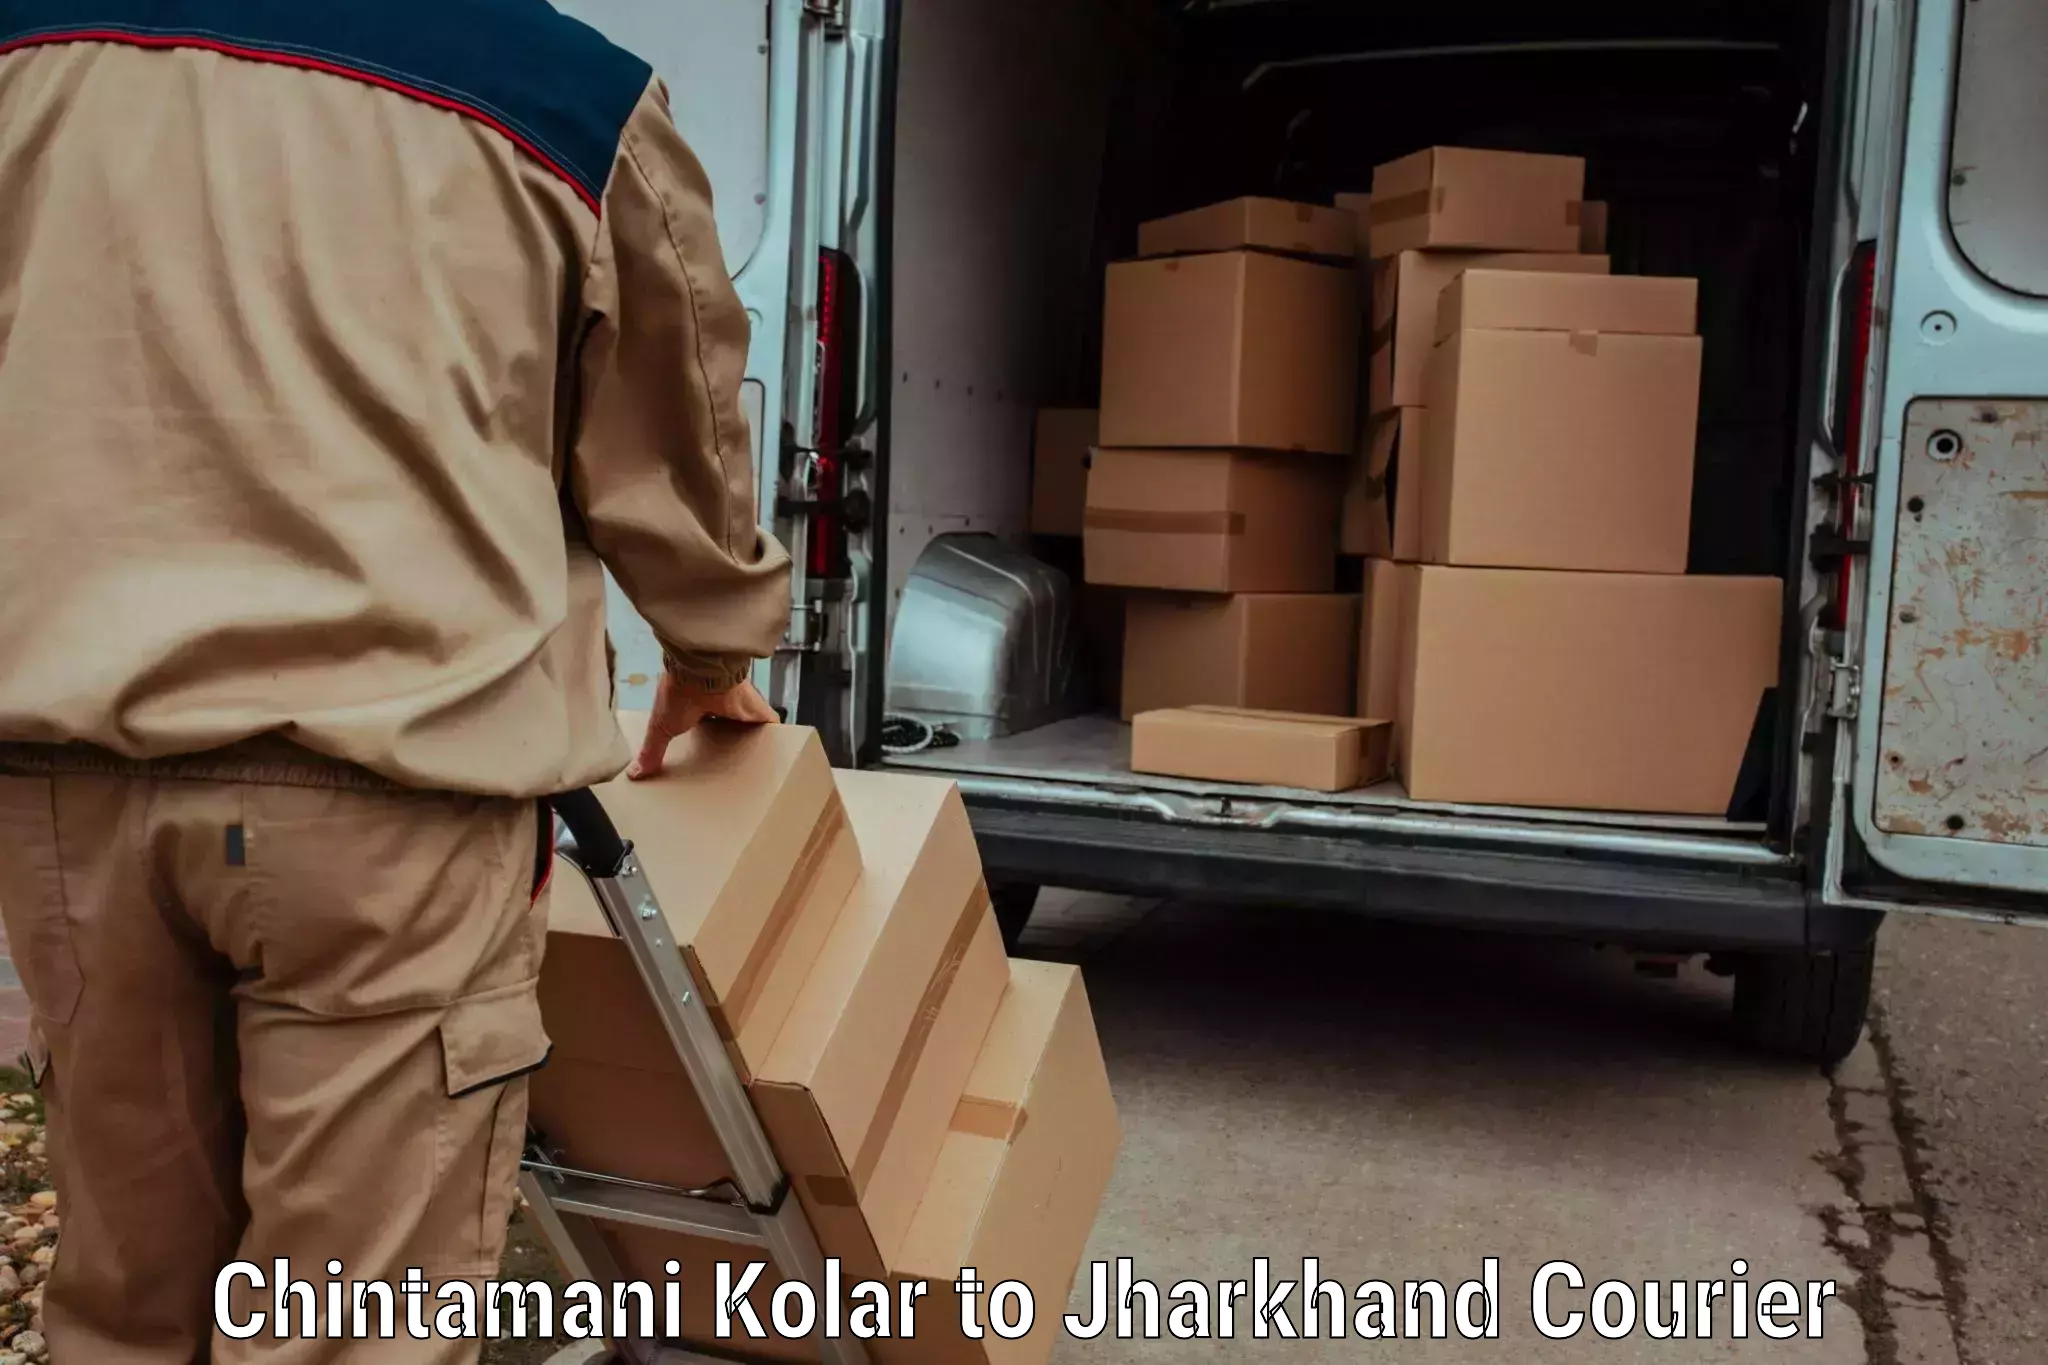 Next-day freight services Chintamani Kolar to Kedla